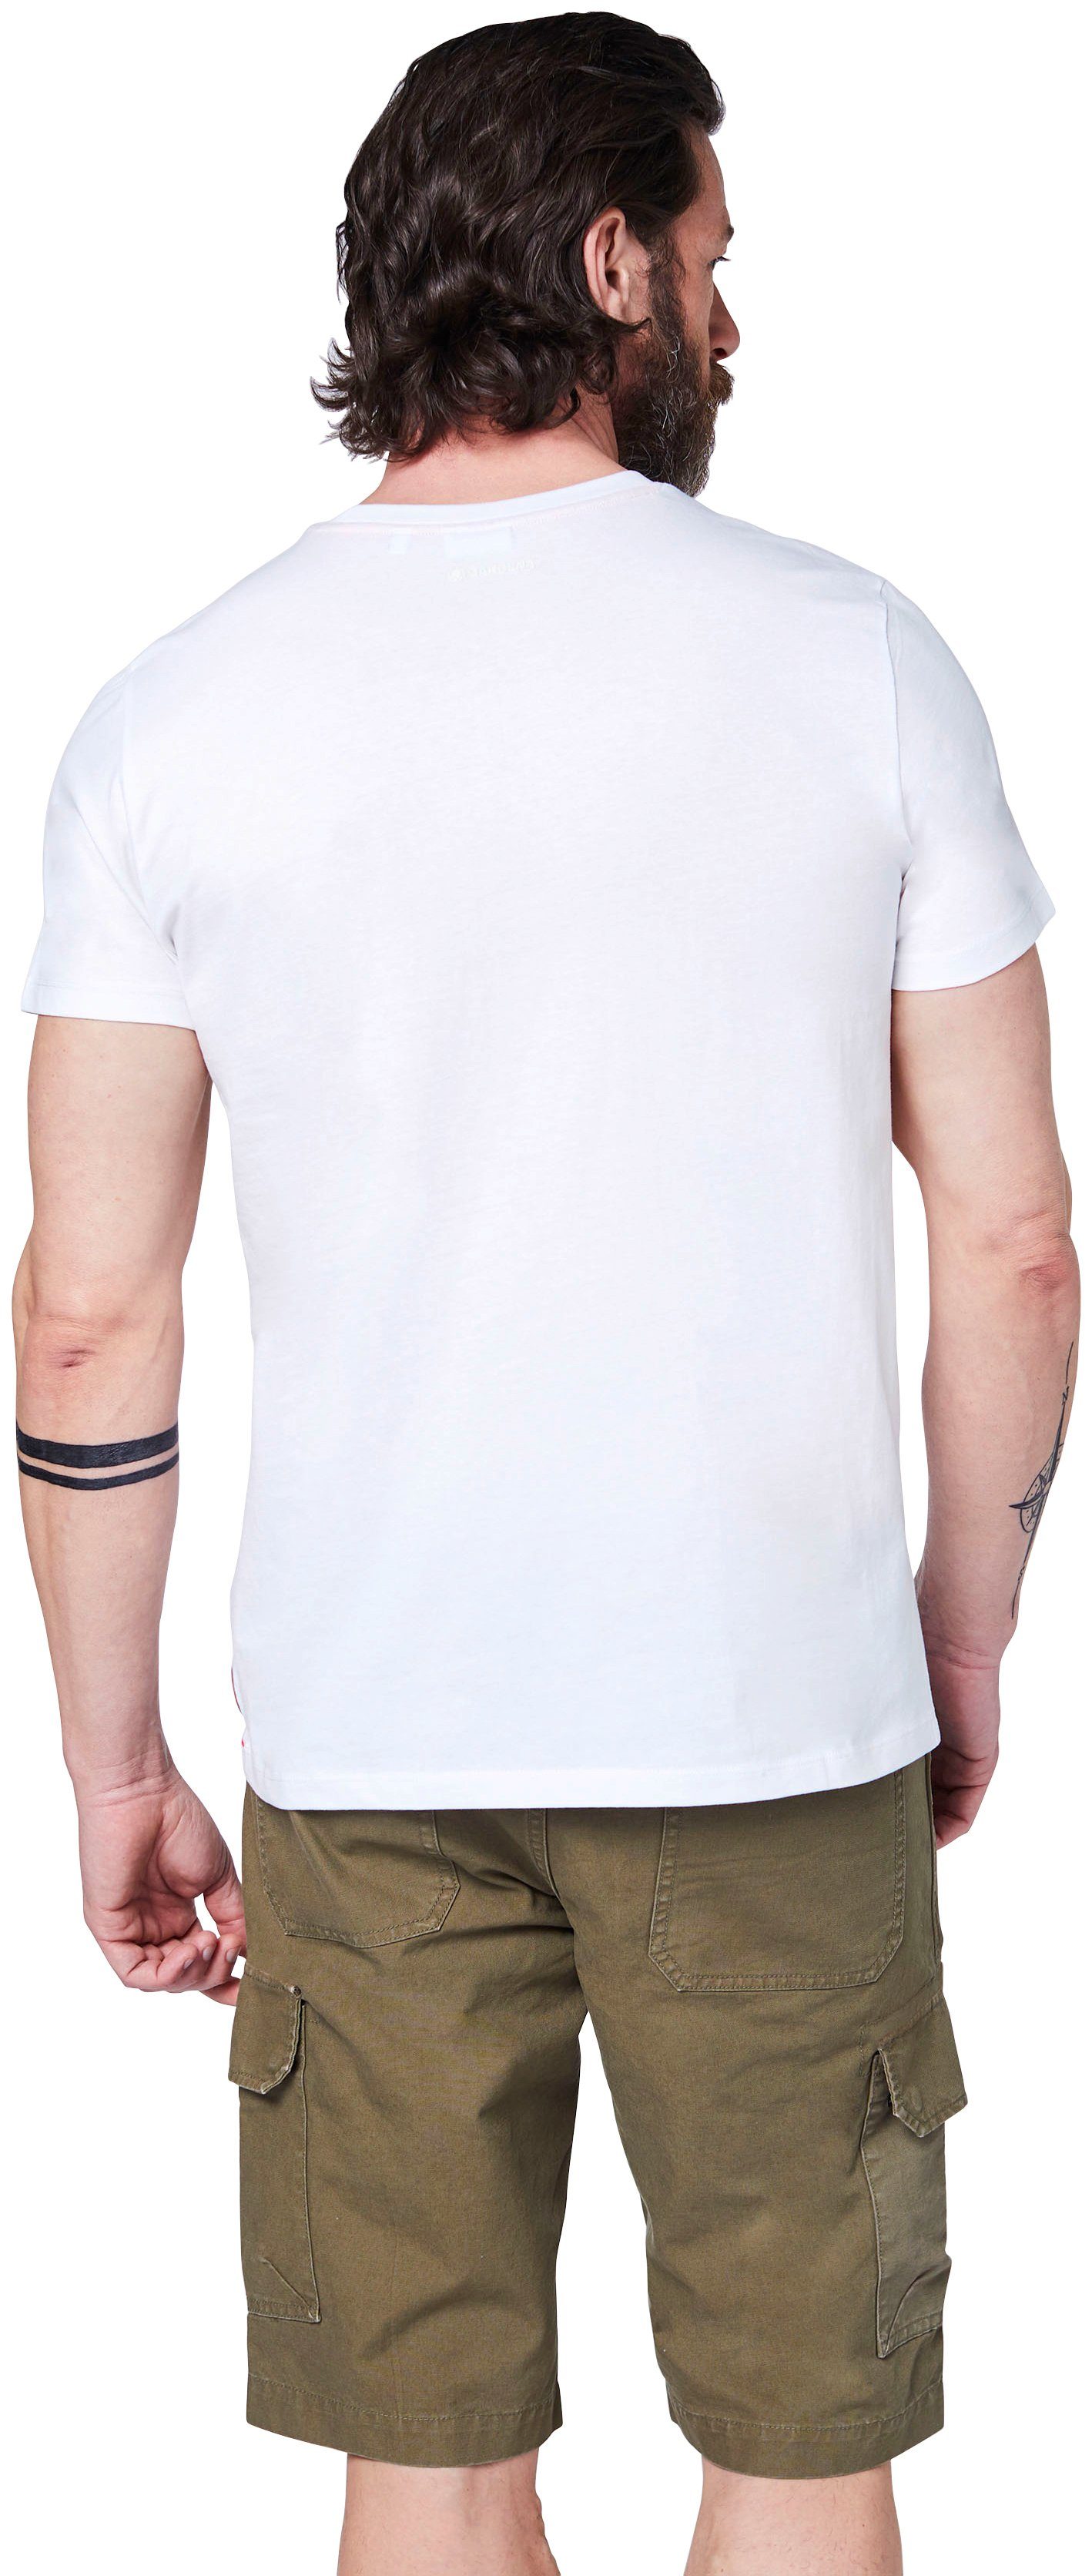 GARDENA T-Shirt Bright White Aufdruck mit